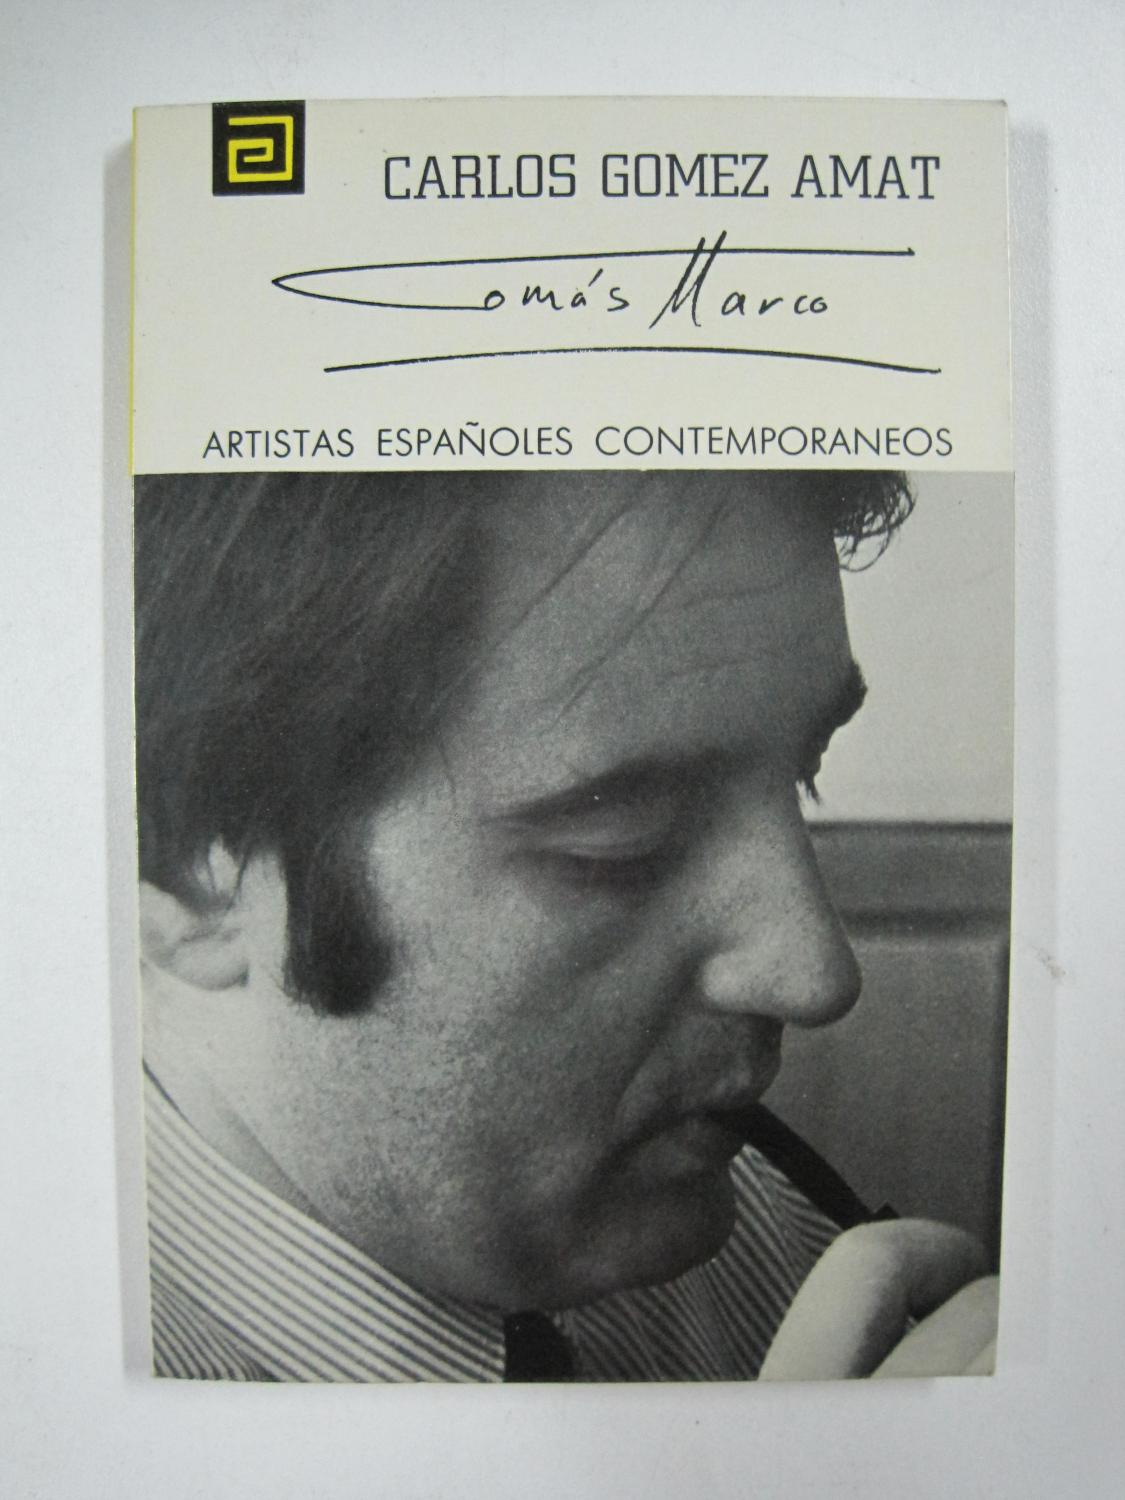 Tomas Marco, Artistas Españoles Contemporaneos, Serie Musicos - Carlos Gomez Amat